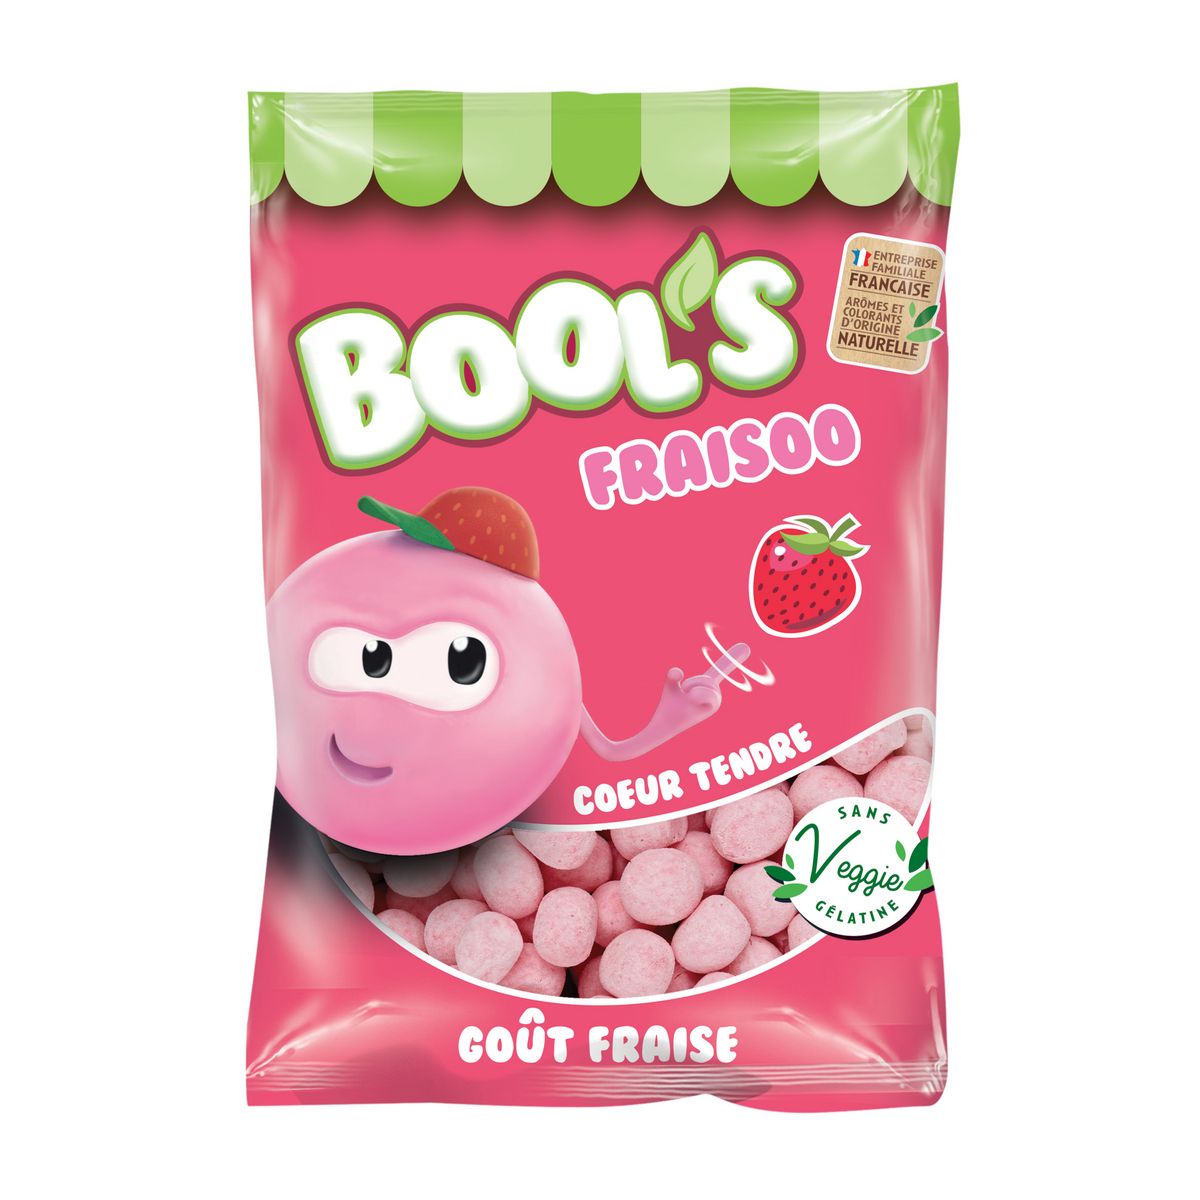 VERQUIN Fraisoo' Bool Bonbons goût fraise 200g